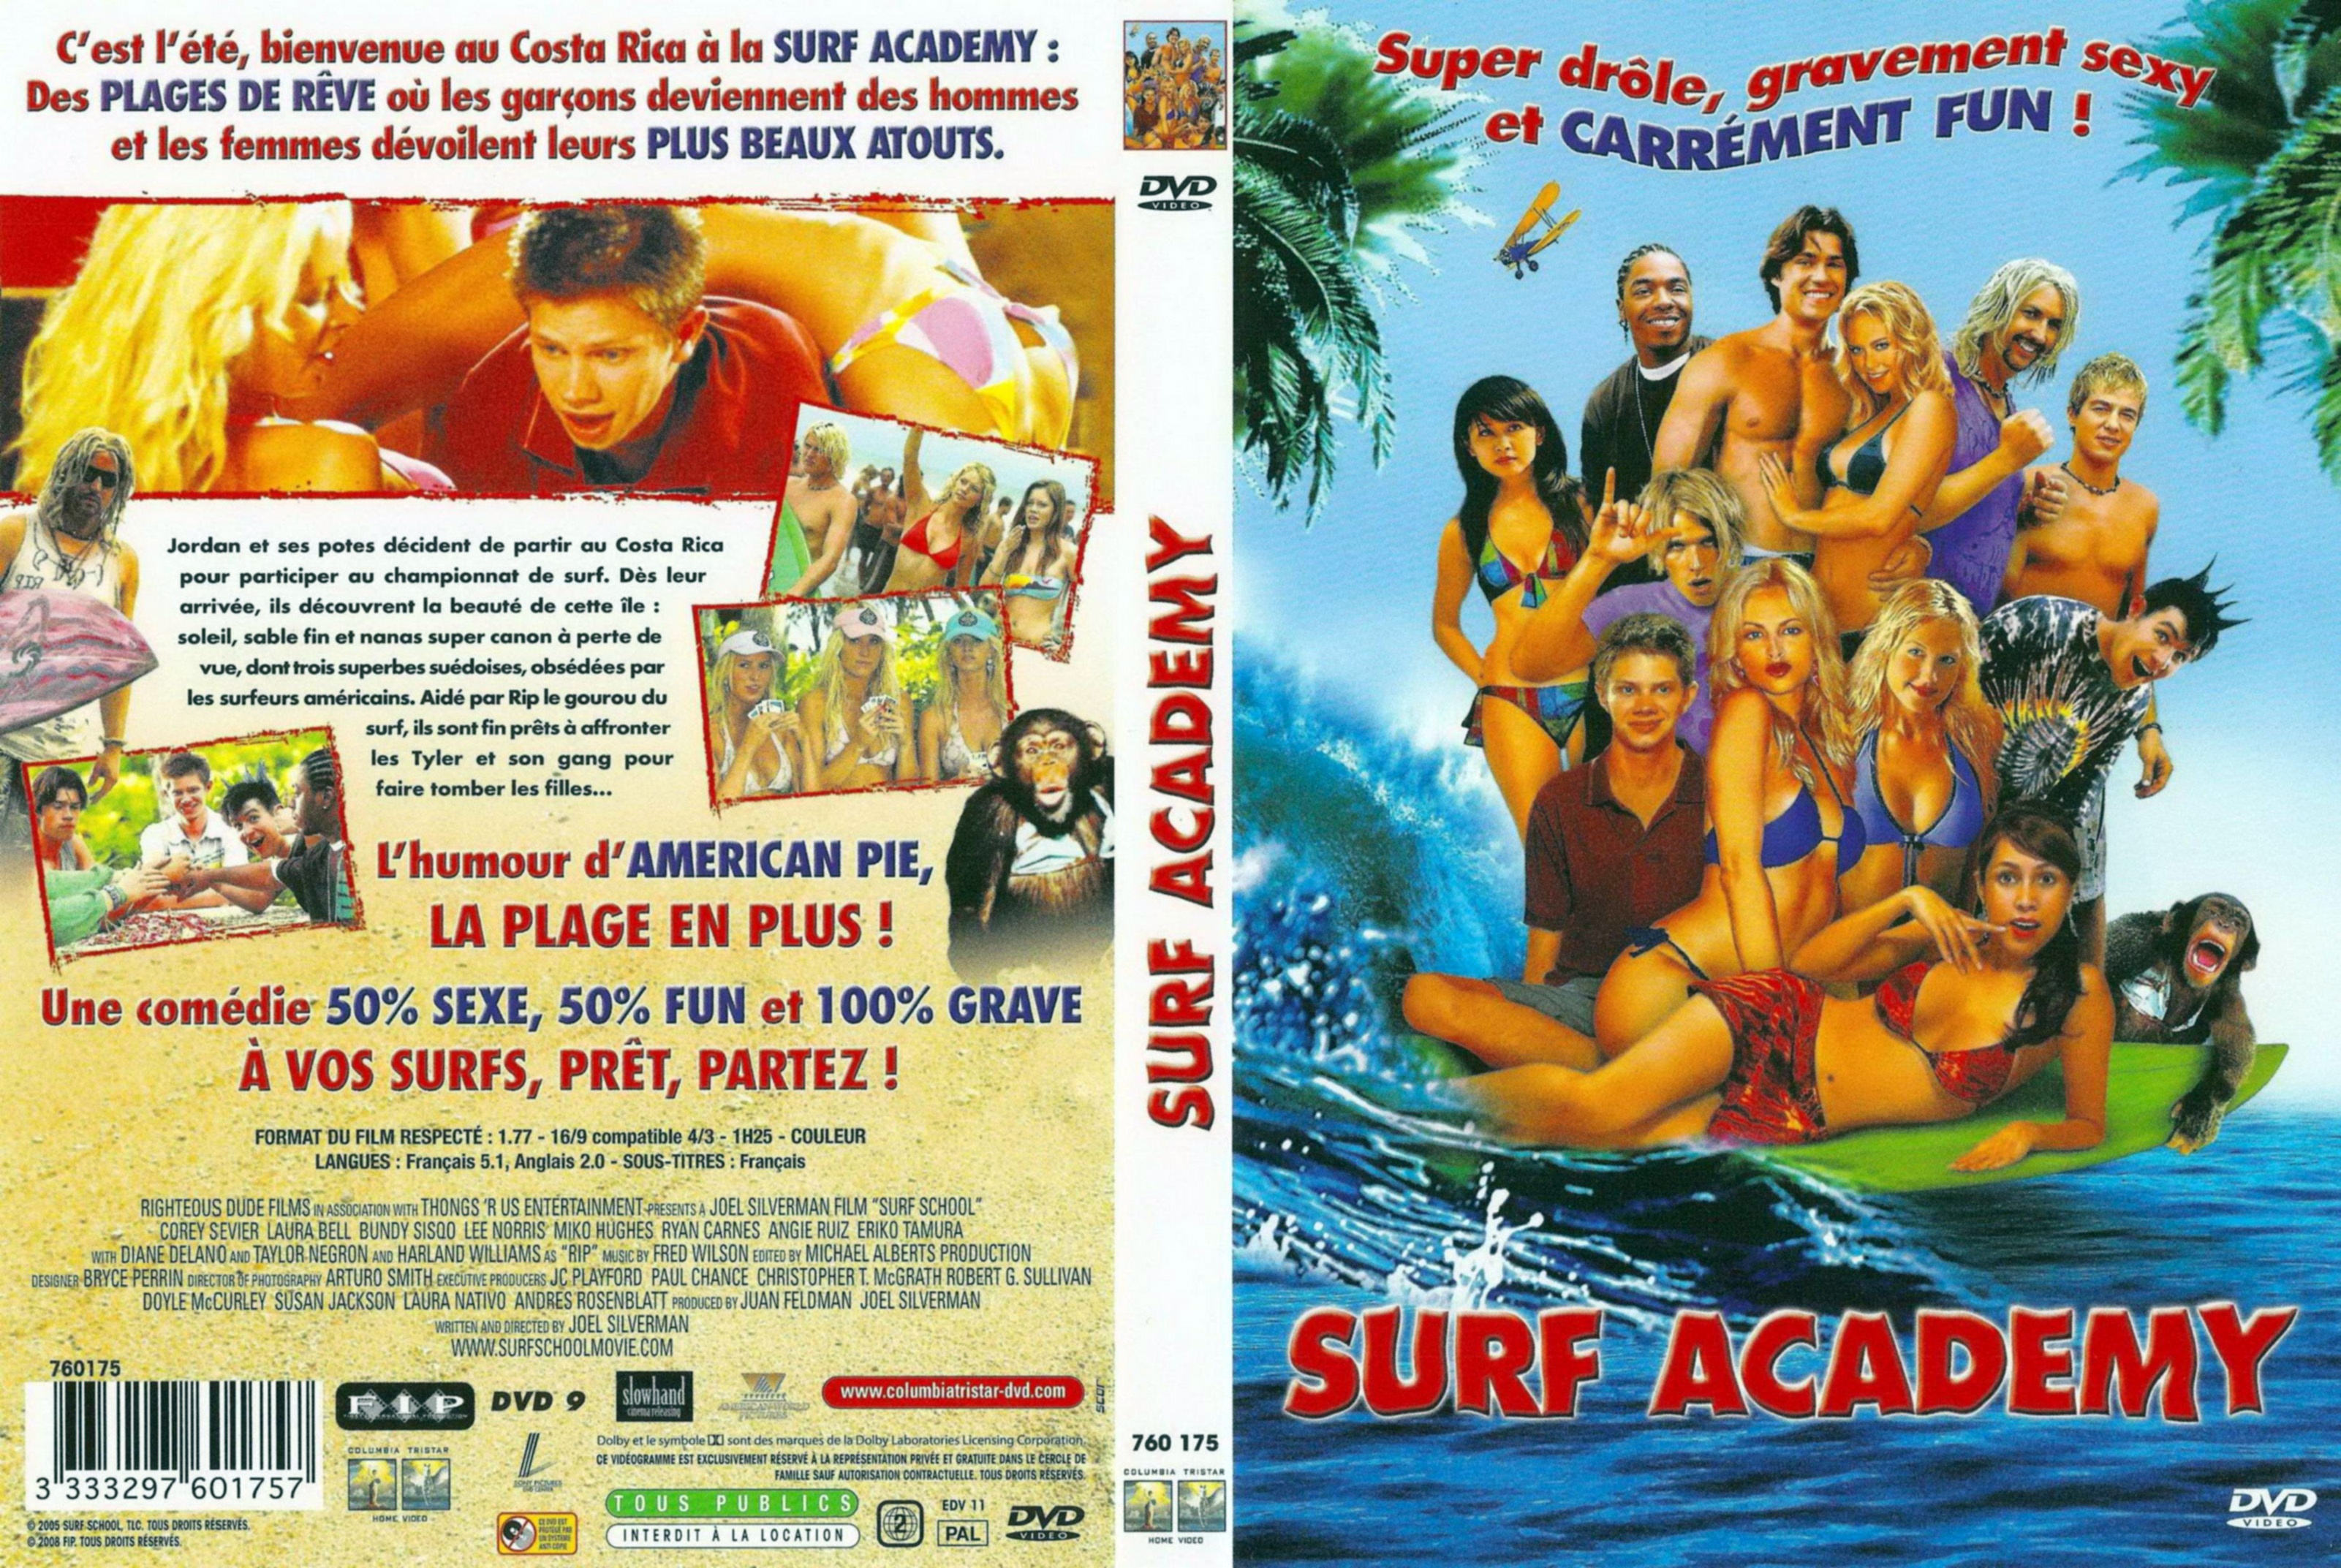 Jaquette DVD Surf academy v2